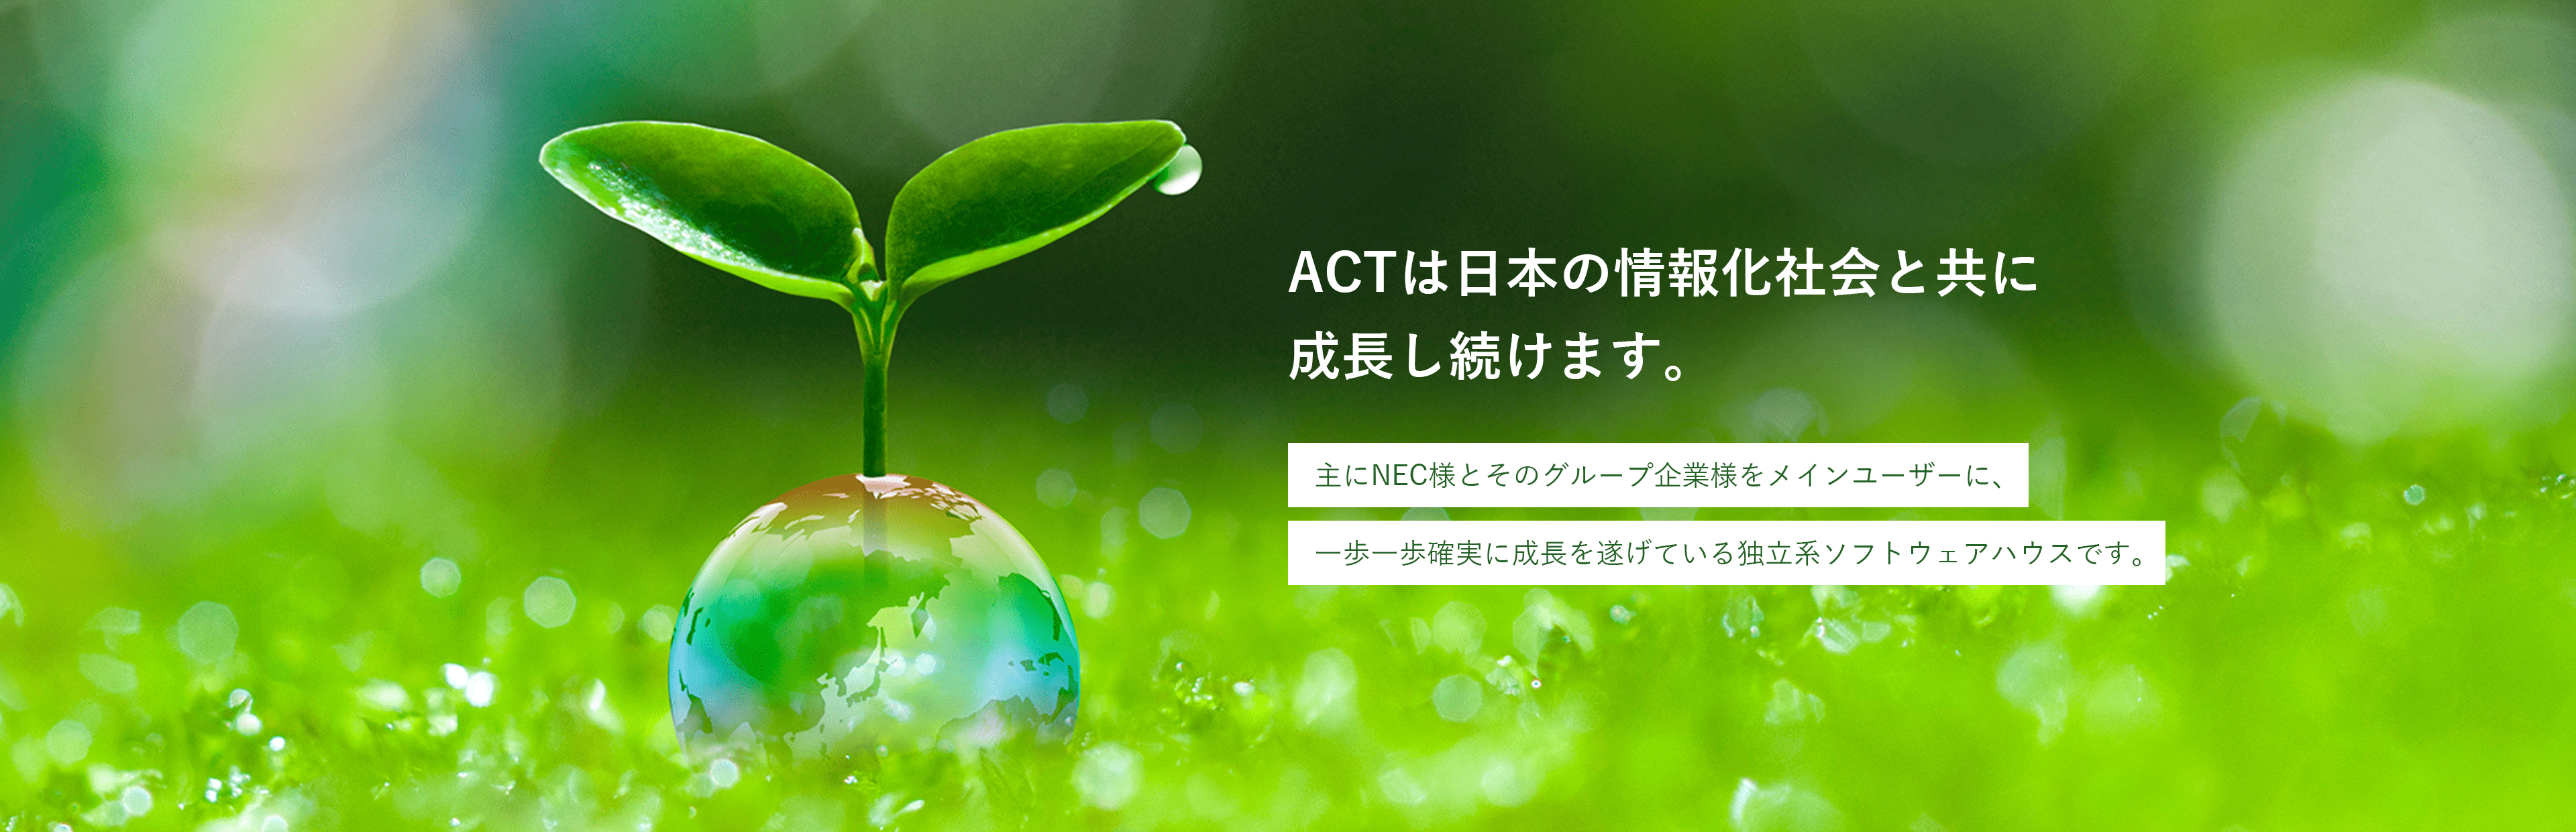 ACTは日本の情報社会と共に成長し続けます。